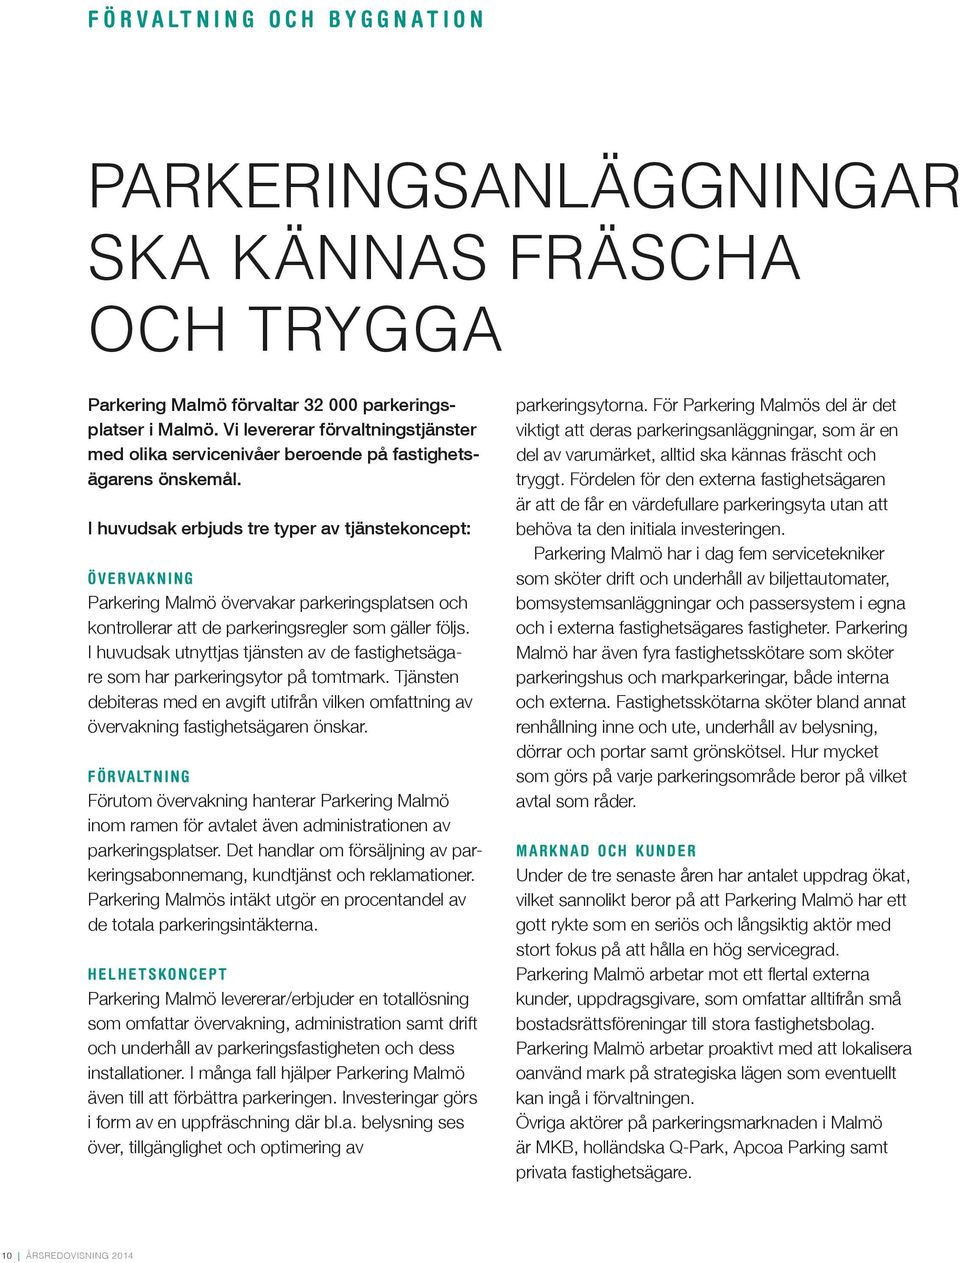 I huvudsak erbjuds tre typer av tjänstekoncept: övervakning Parkering Malmö övervakar parkeringsplatsen och kontrollerar att de parkeringsregler som gäller följs.